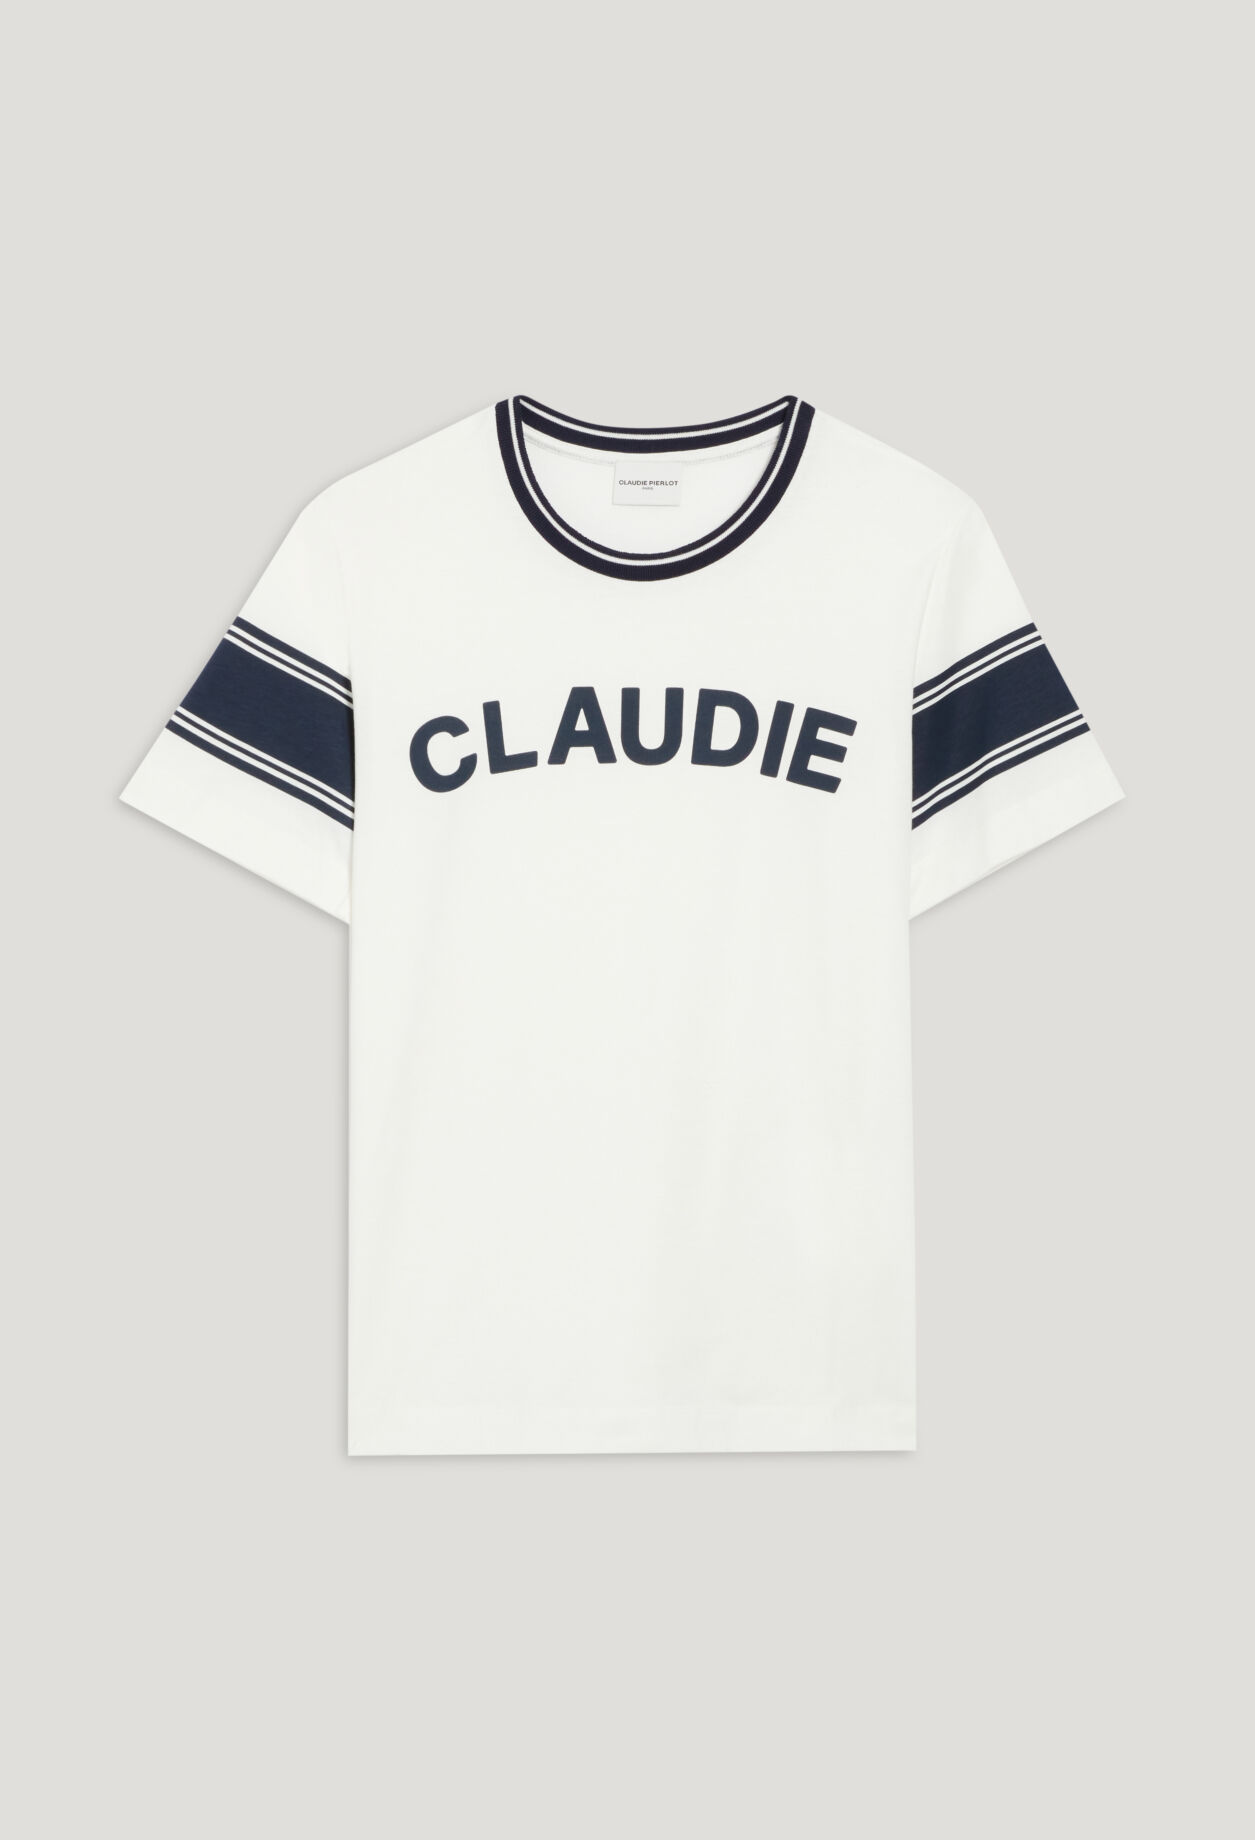 끌로디피에로 Claudiepierlot Tee-shirt Claudie bleu et blanc,BICOLORE